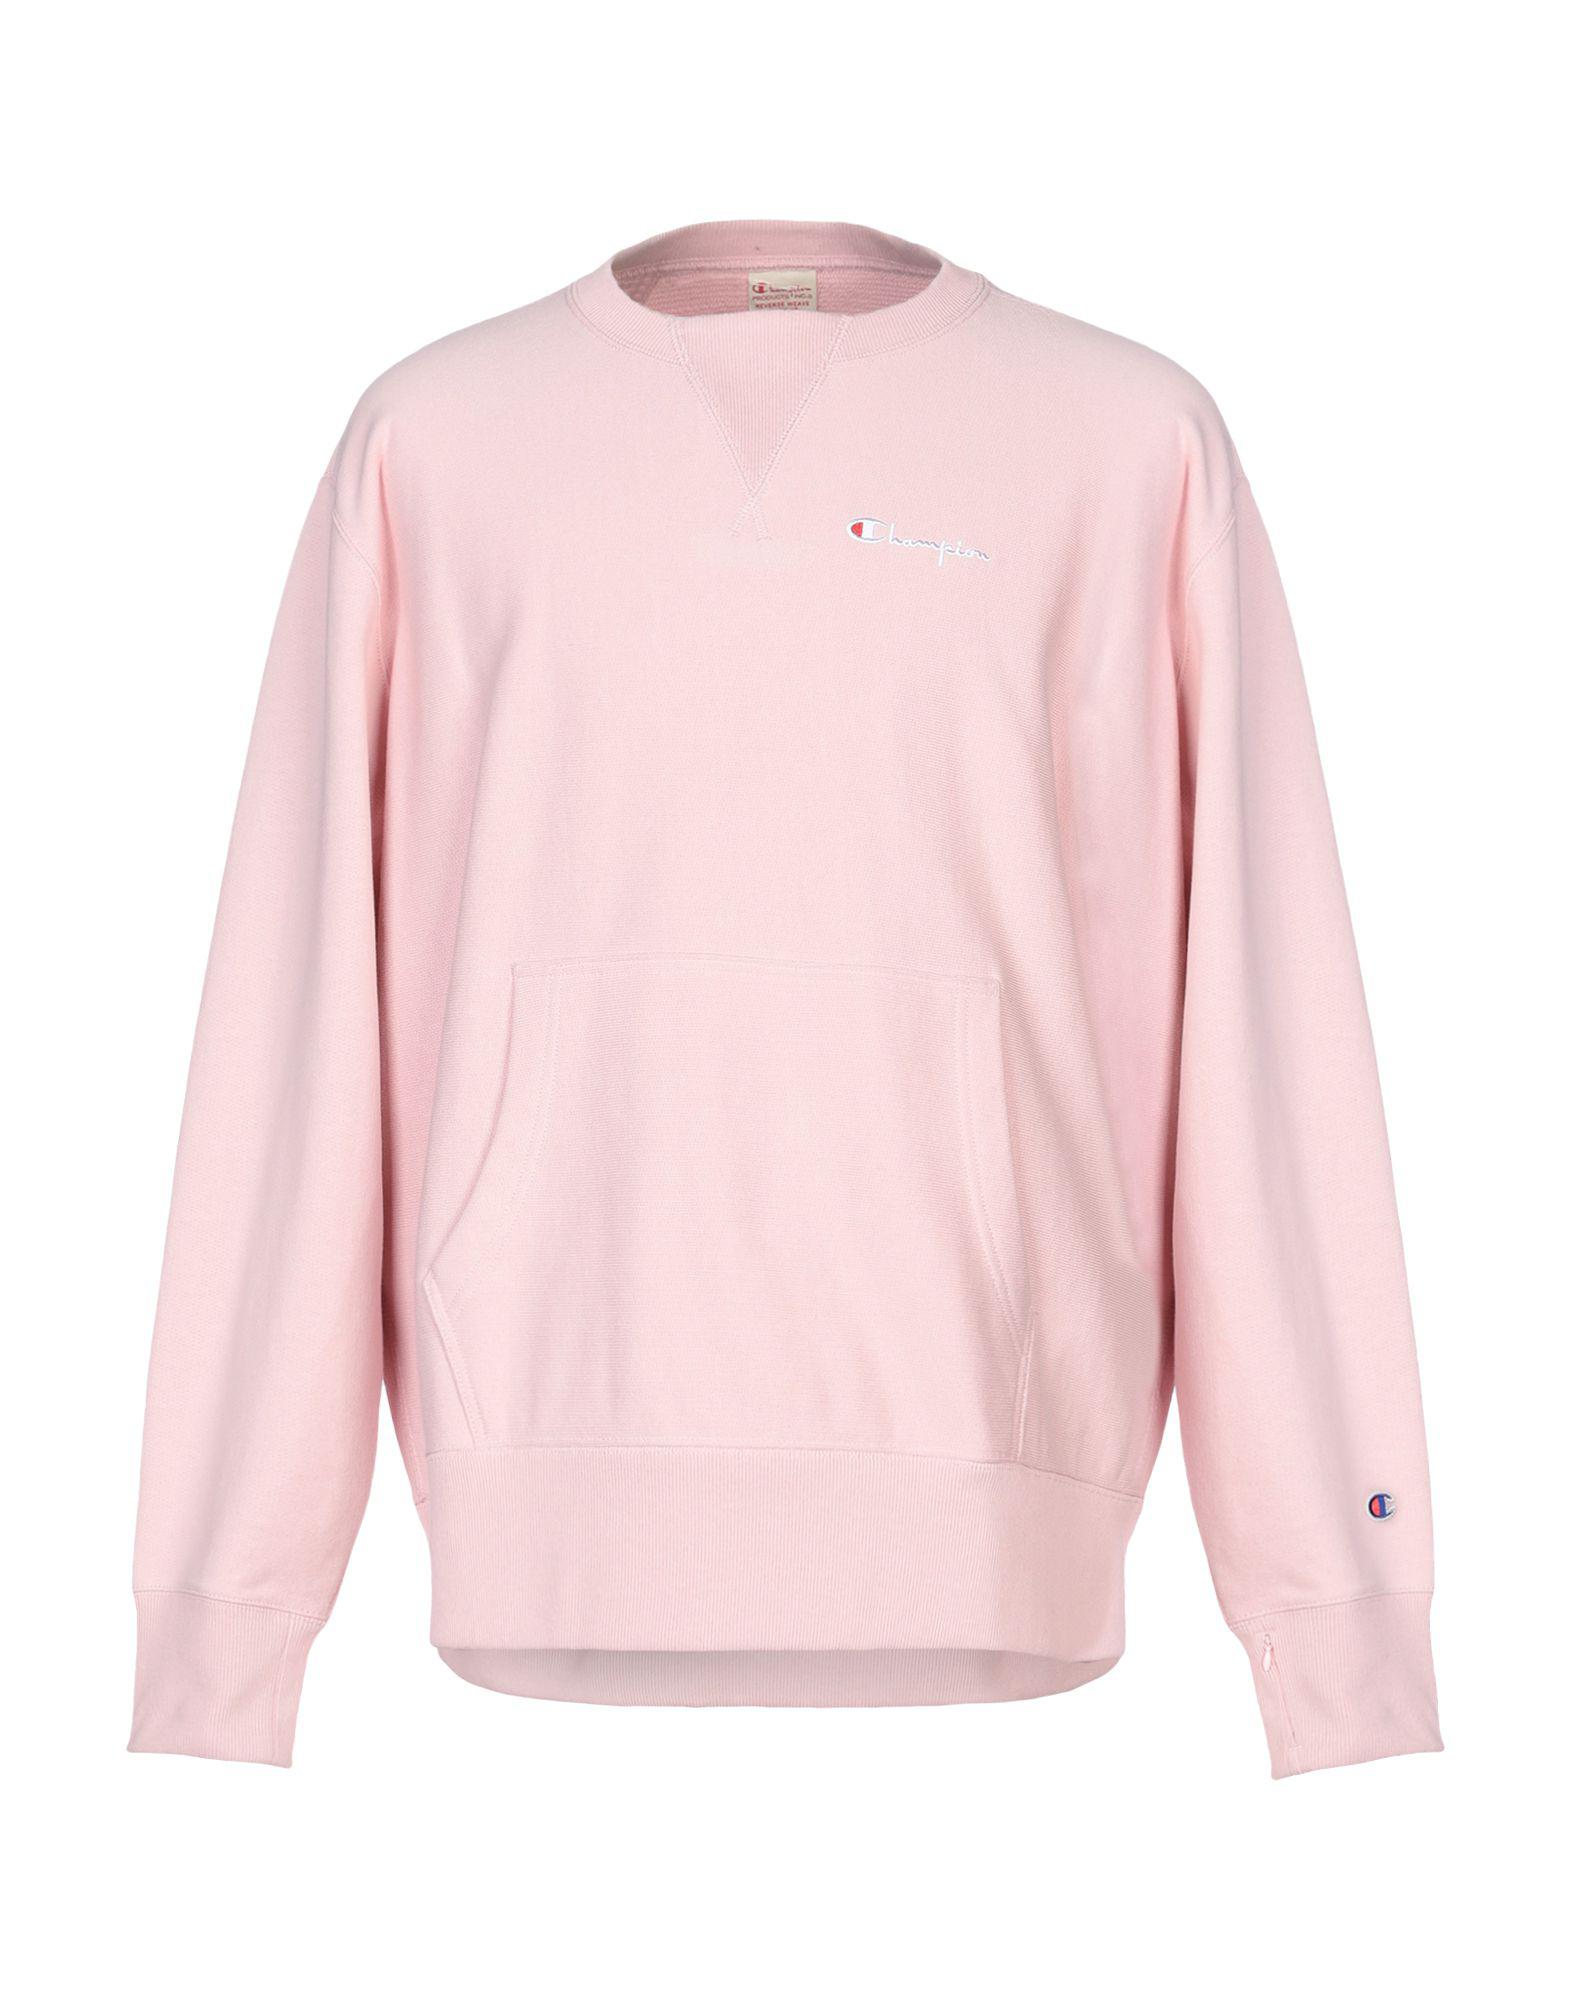 Champion Cotton Sweatshirt in Pink for Men - Lyst